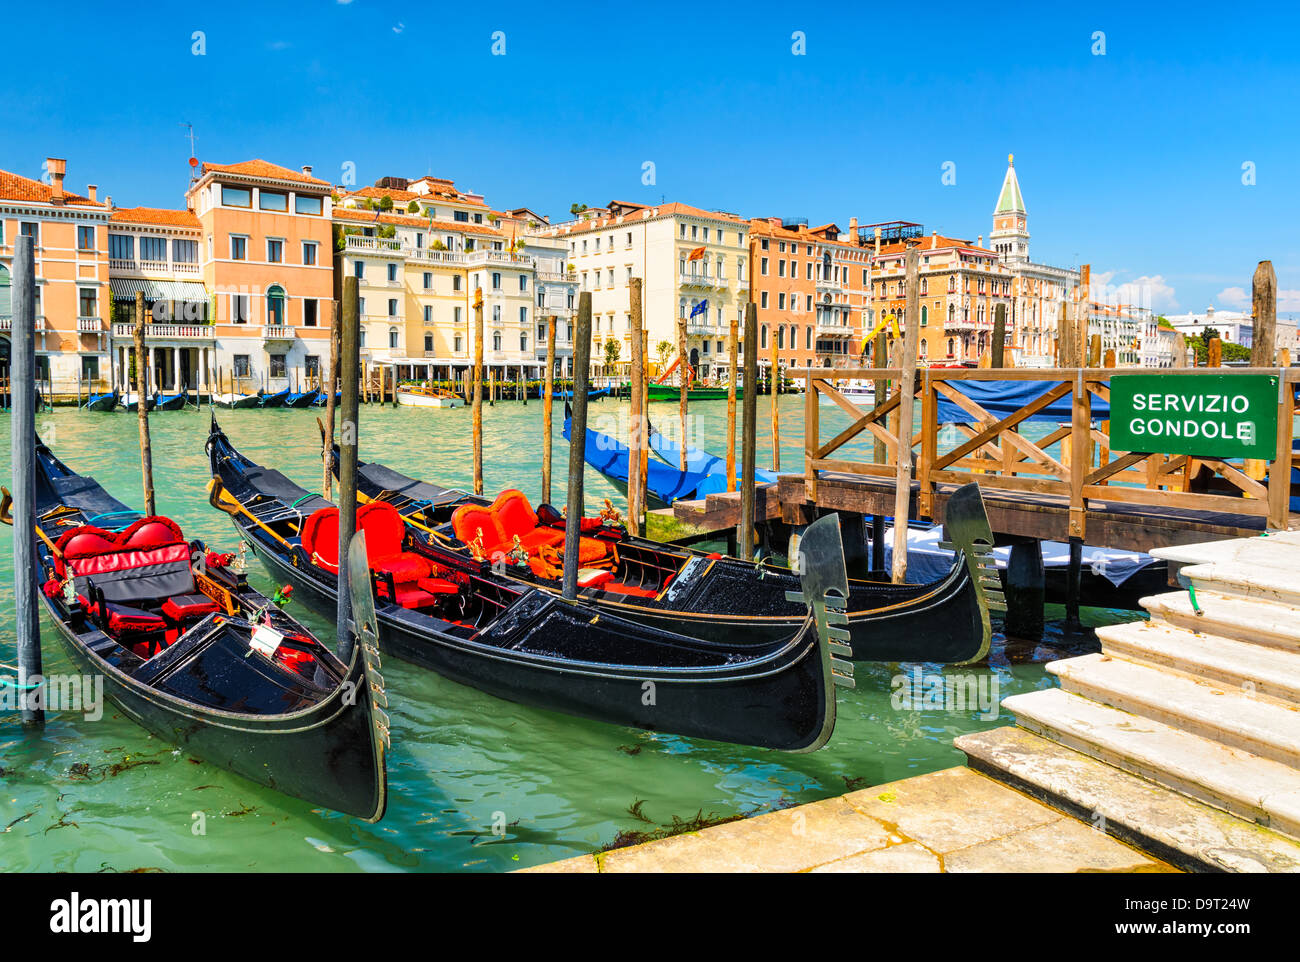 Le gondole del Canal Grande di Venezia con la Piazza San Marco in background, Italia Foto Stock